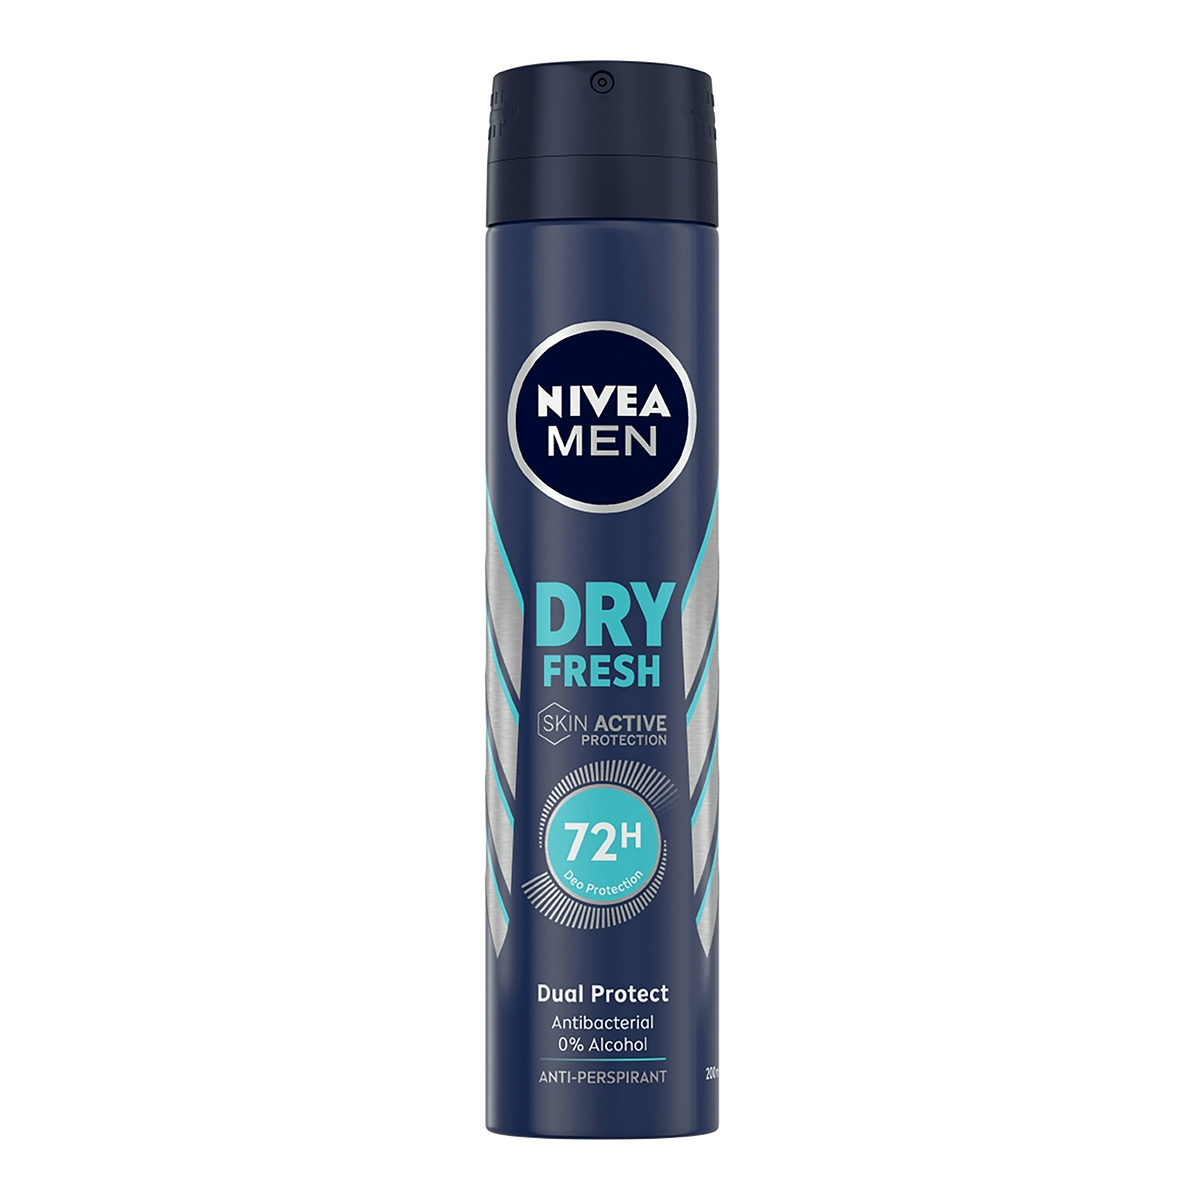 Desodorante dry fresh NIVEA Men spray 200 ml